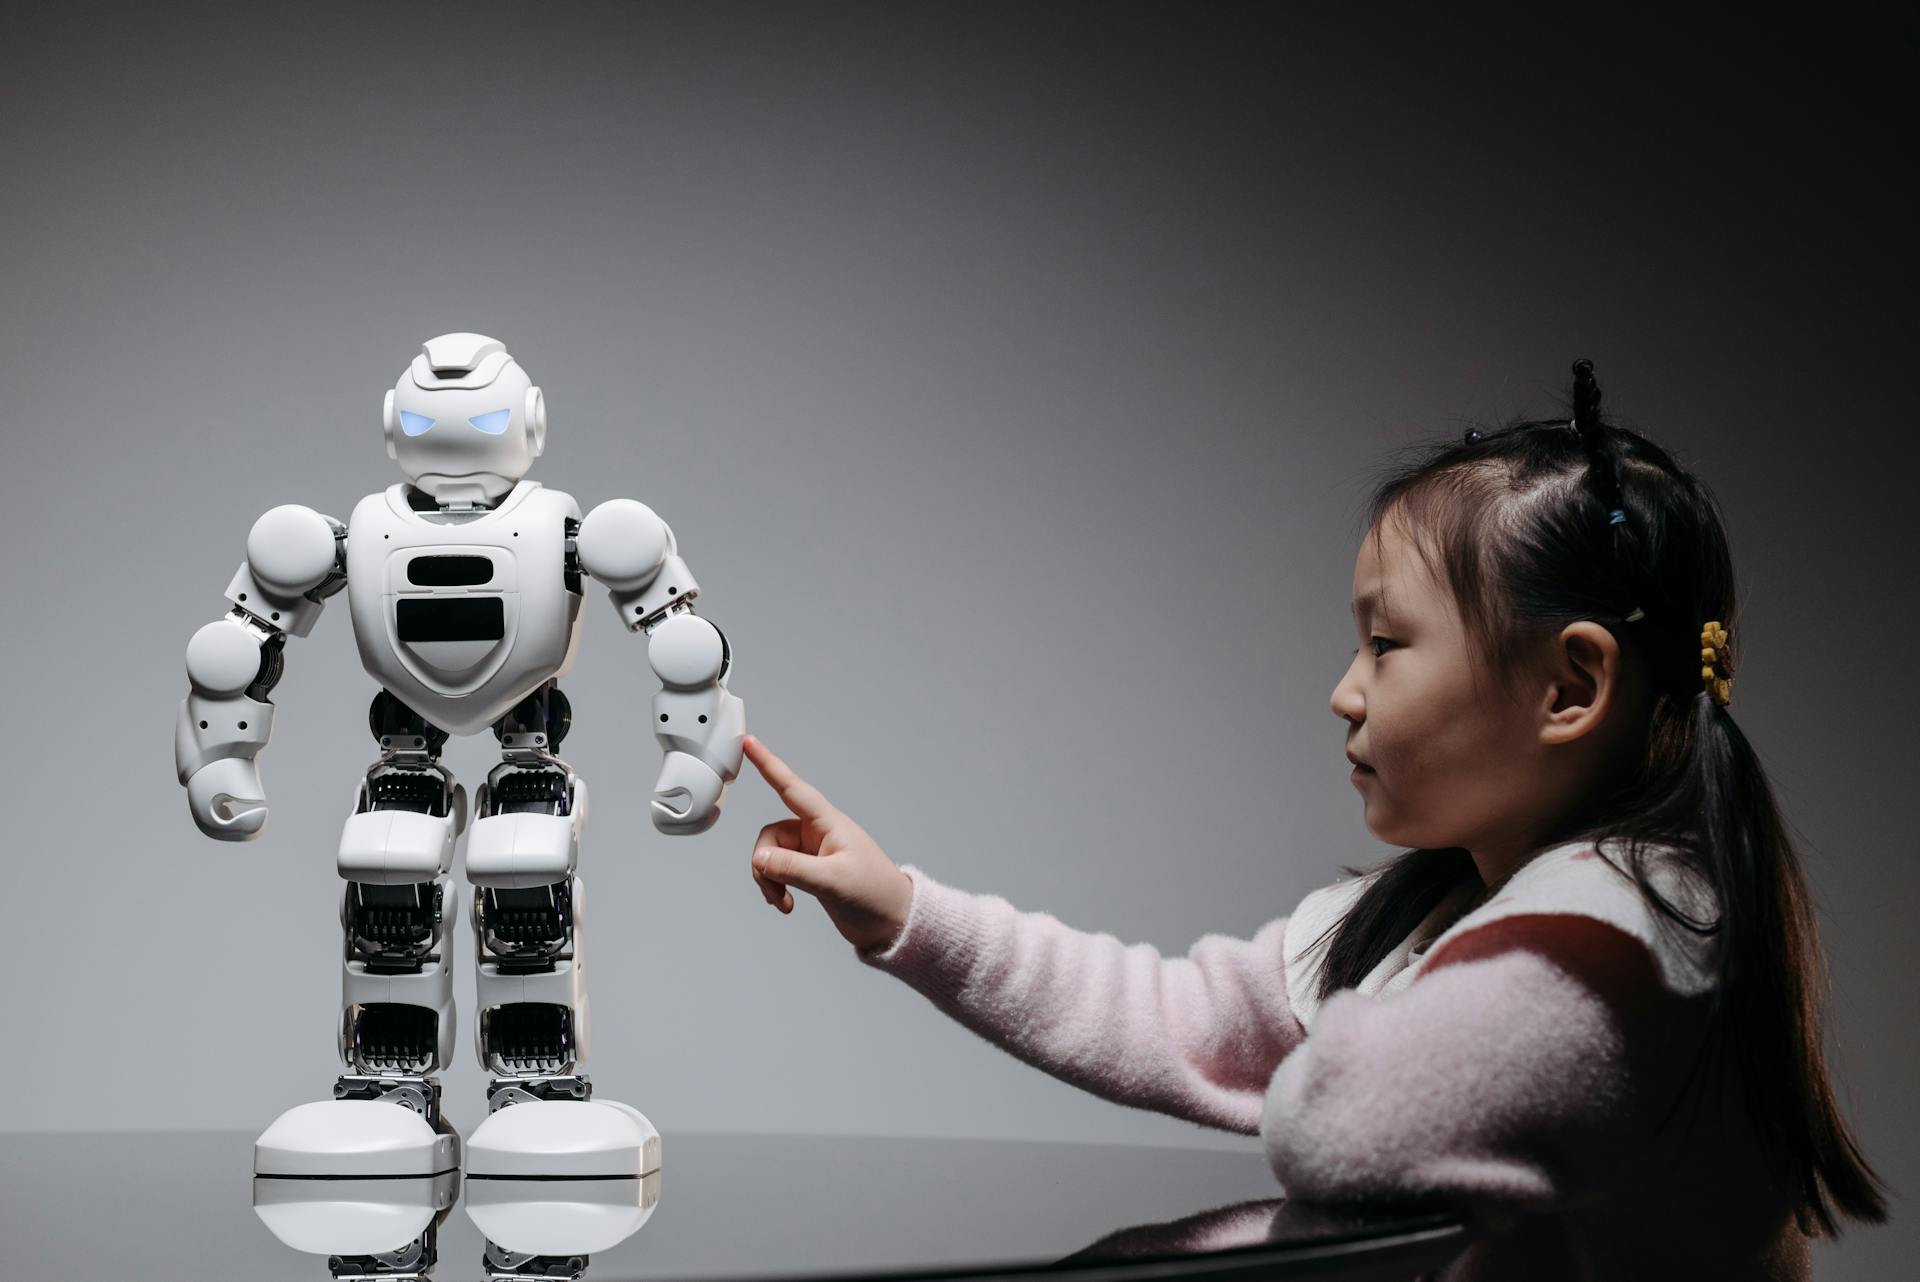 L'utilisation de robots selon certains protocoles pourrait améliorer les capacités d'apprentissage des enfants.